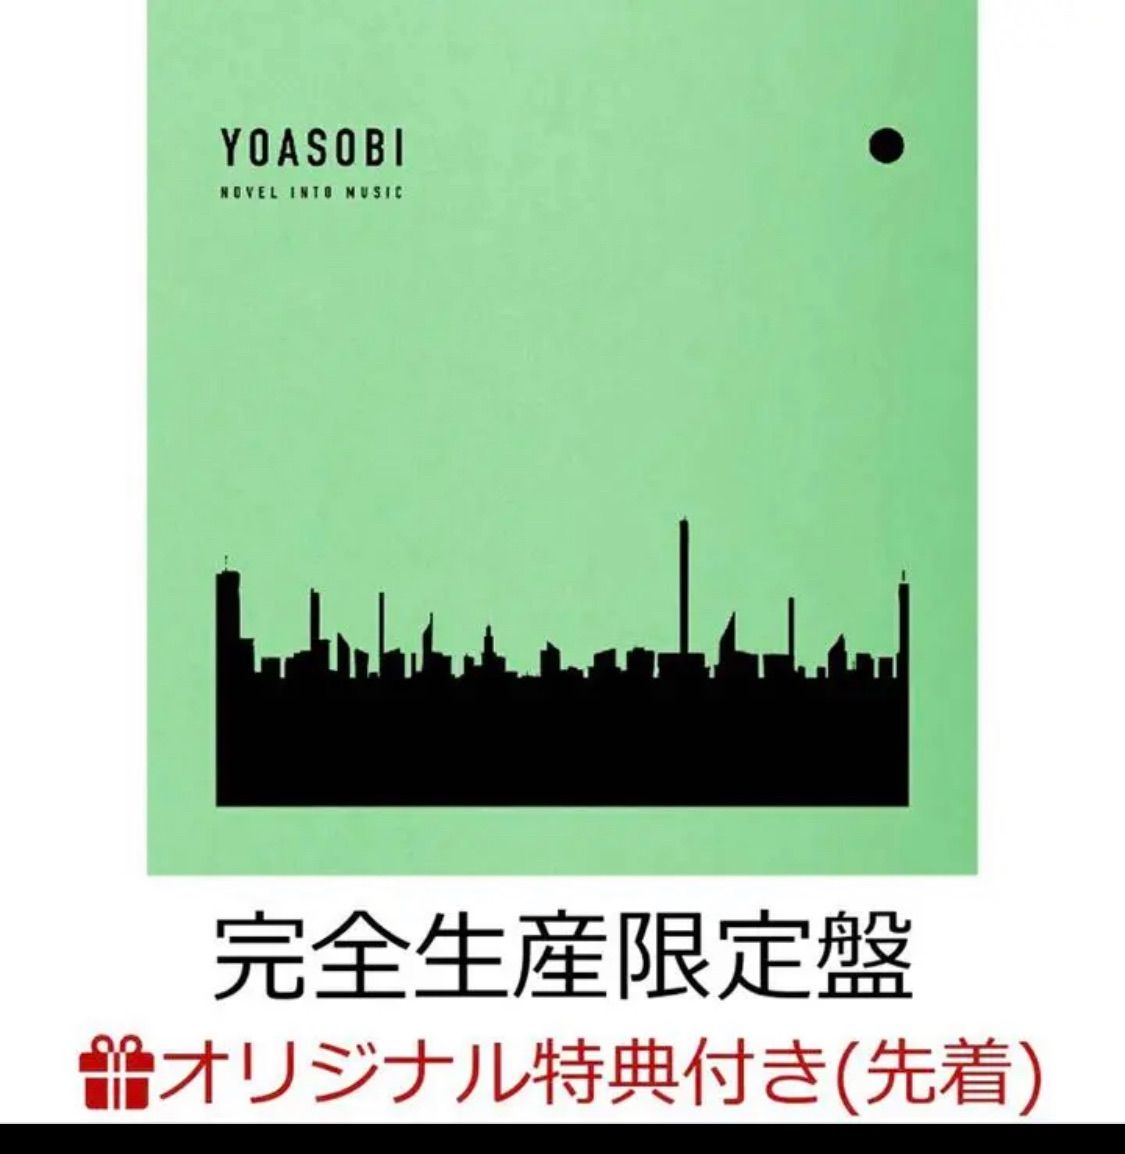 送料込!!新品 THE BOOK YOASOBI 完全生産限定版 ヨアソビ